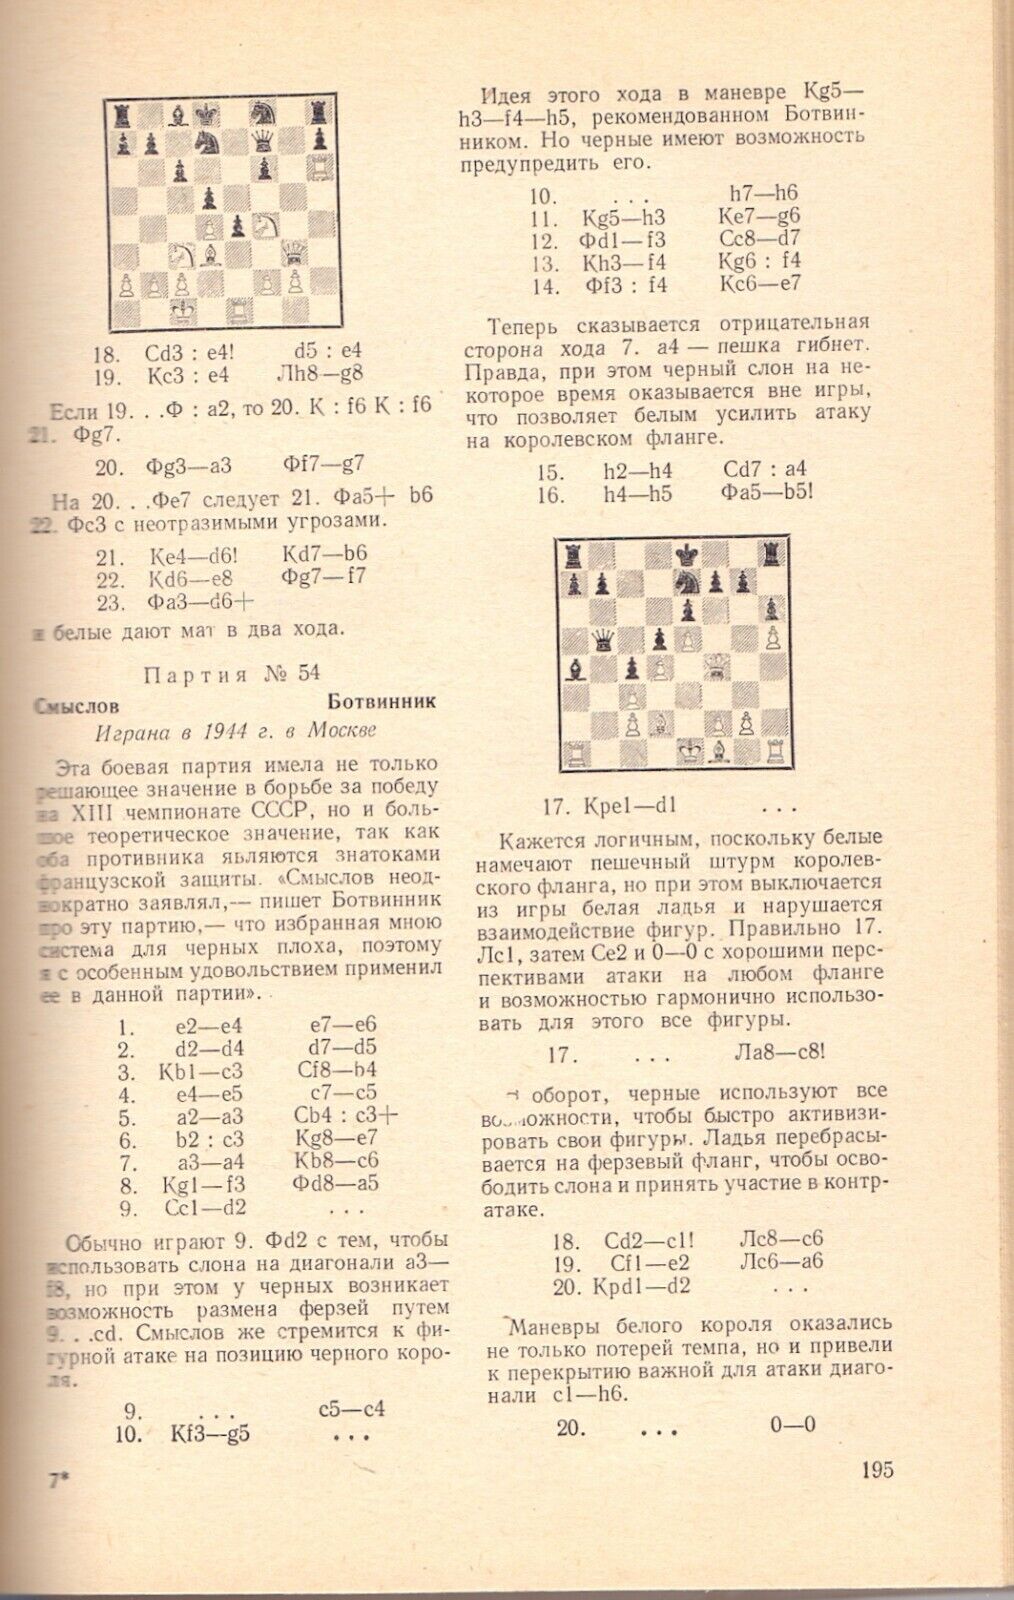 11016.Chess Book signed by Bronstein, Taimanov, Gulko, Savon, Kuzmin, Vasyukov, Gufeld